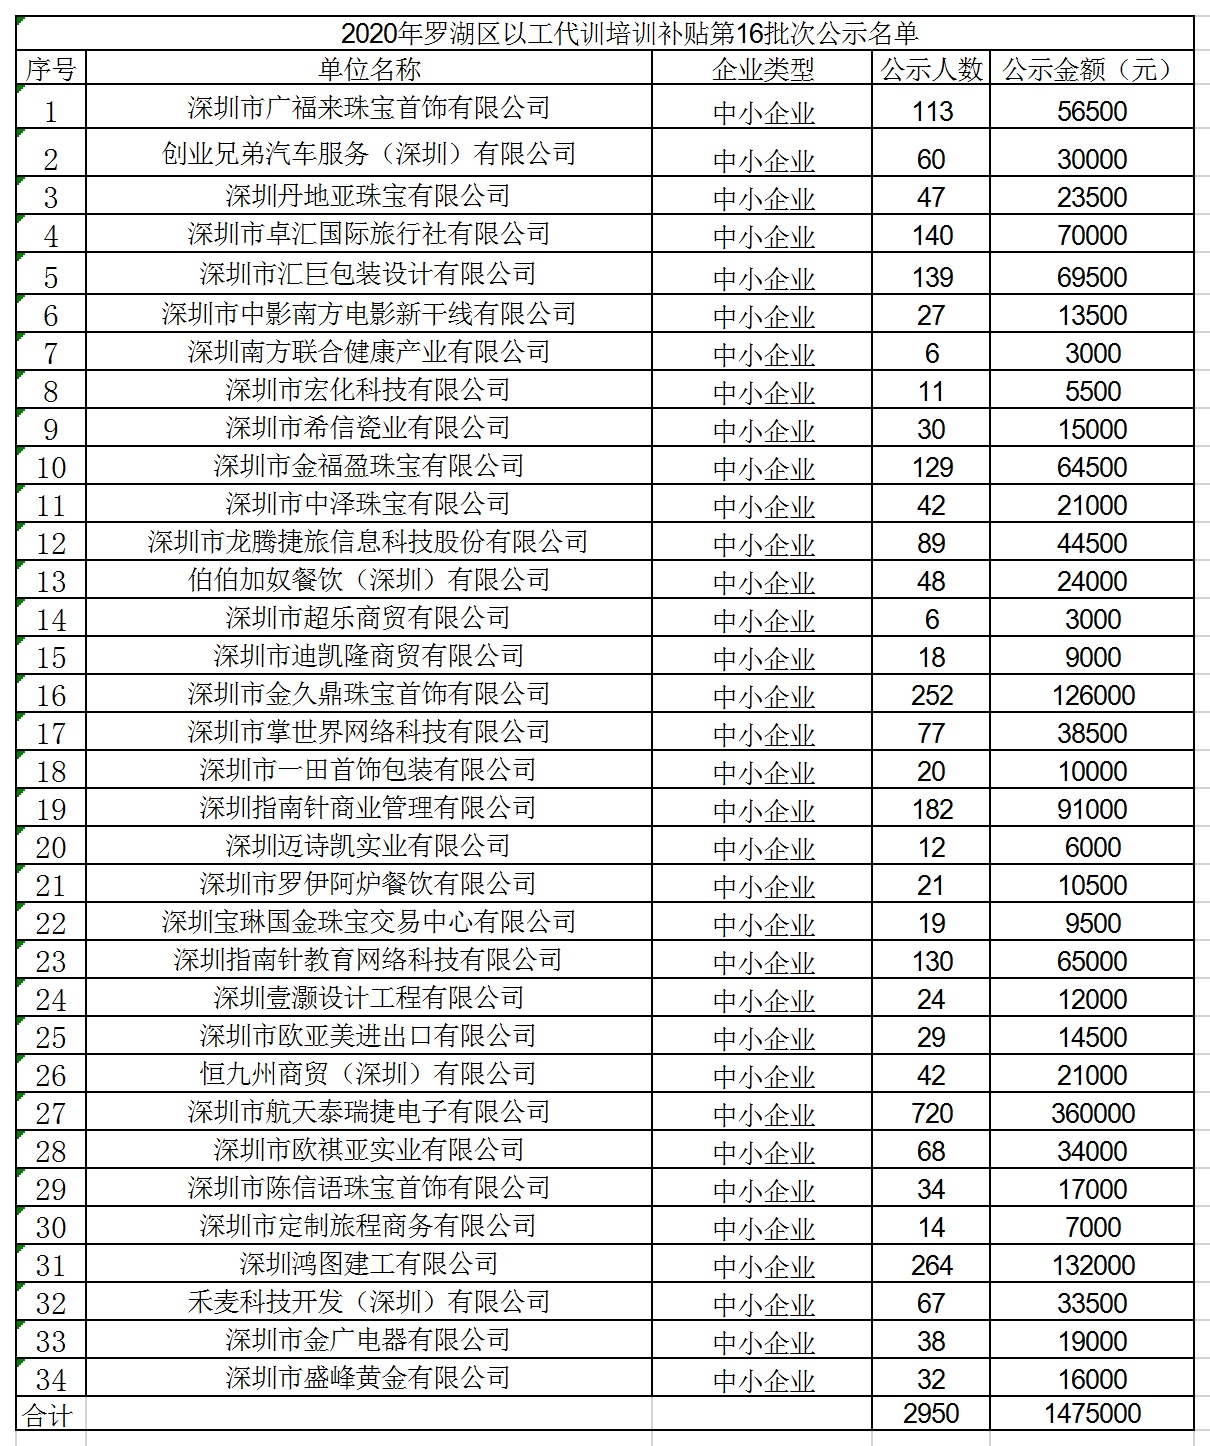 2020年深圳市罗湖区以工代训培训补贴第16批次公示名单.jpg